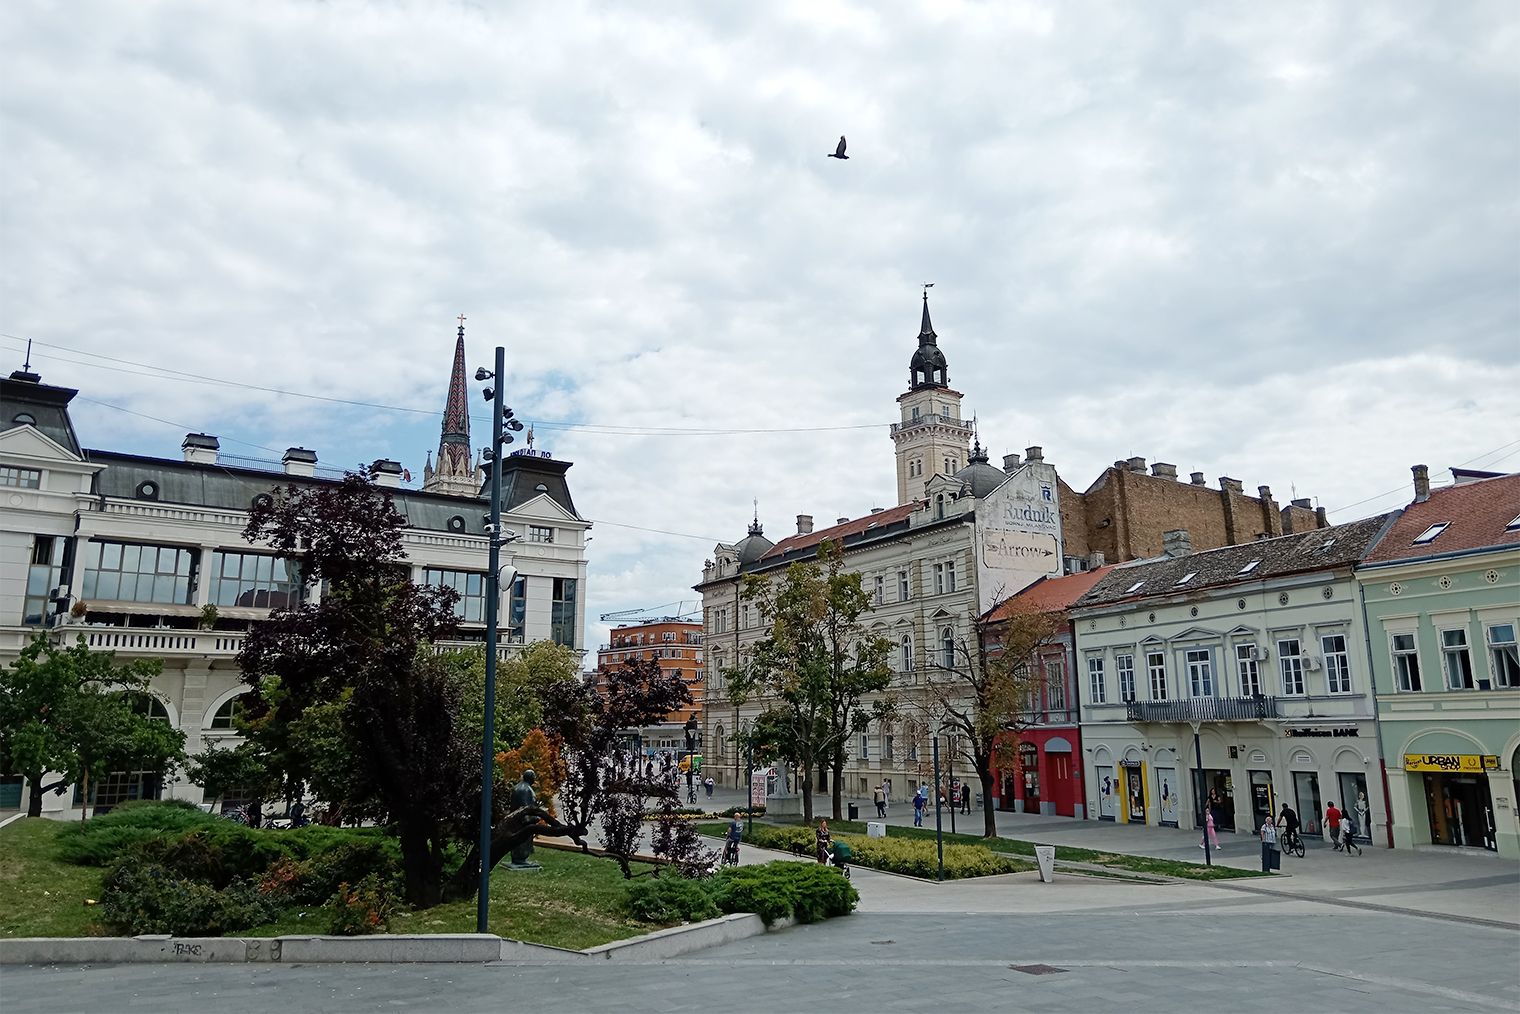 Так выглядит исторический центр города рядом с театром — Српско народно позориште